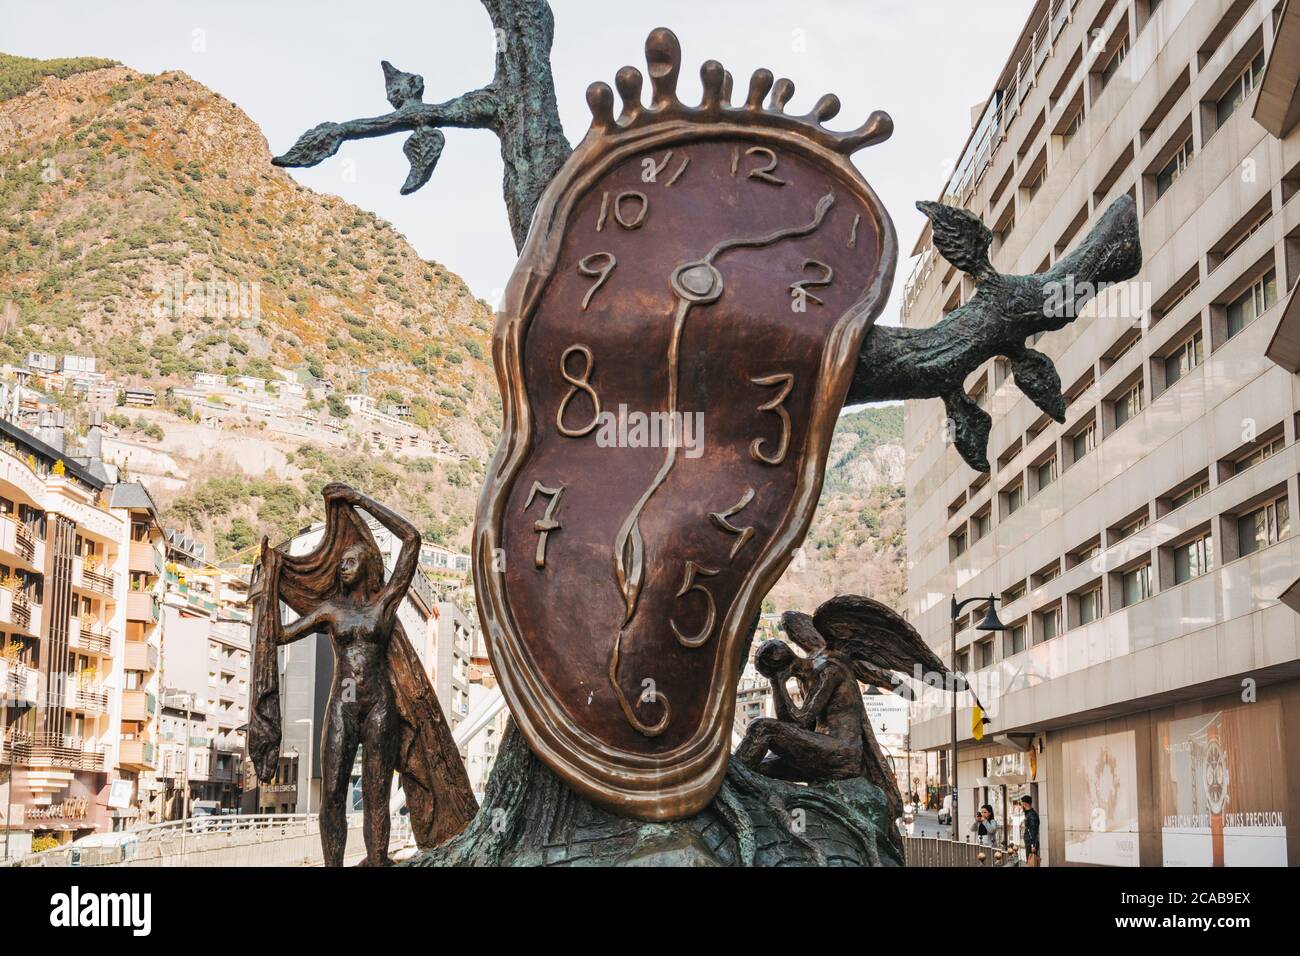 La noblesse du temps (la Noblesse du temps) sculpture de Salvador Dalí en Andorre-la-Vieille, capitale d'Andorre Banque D'Images